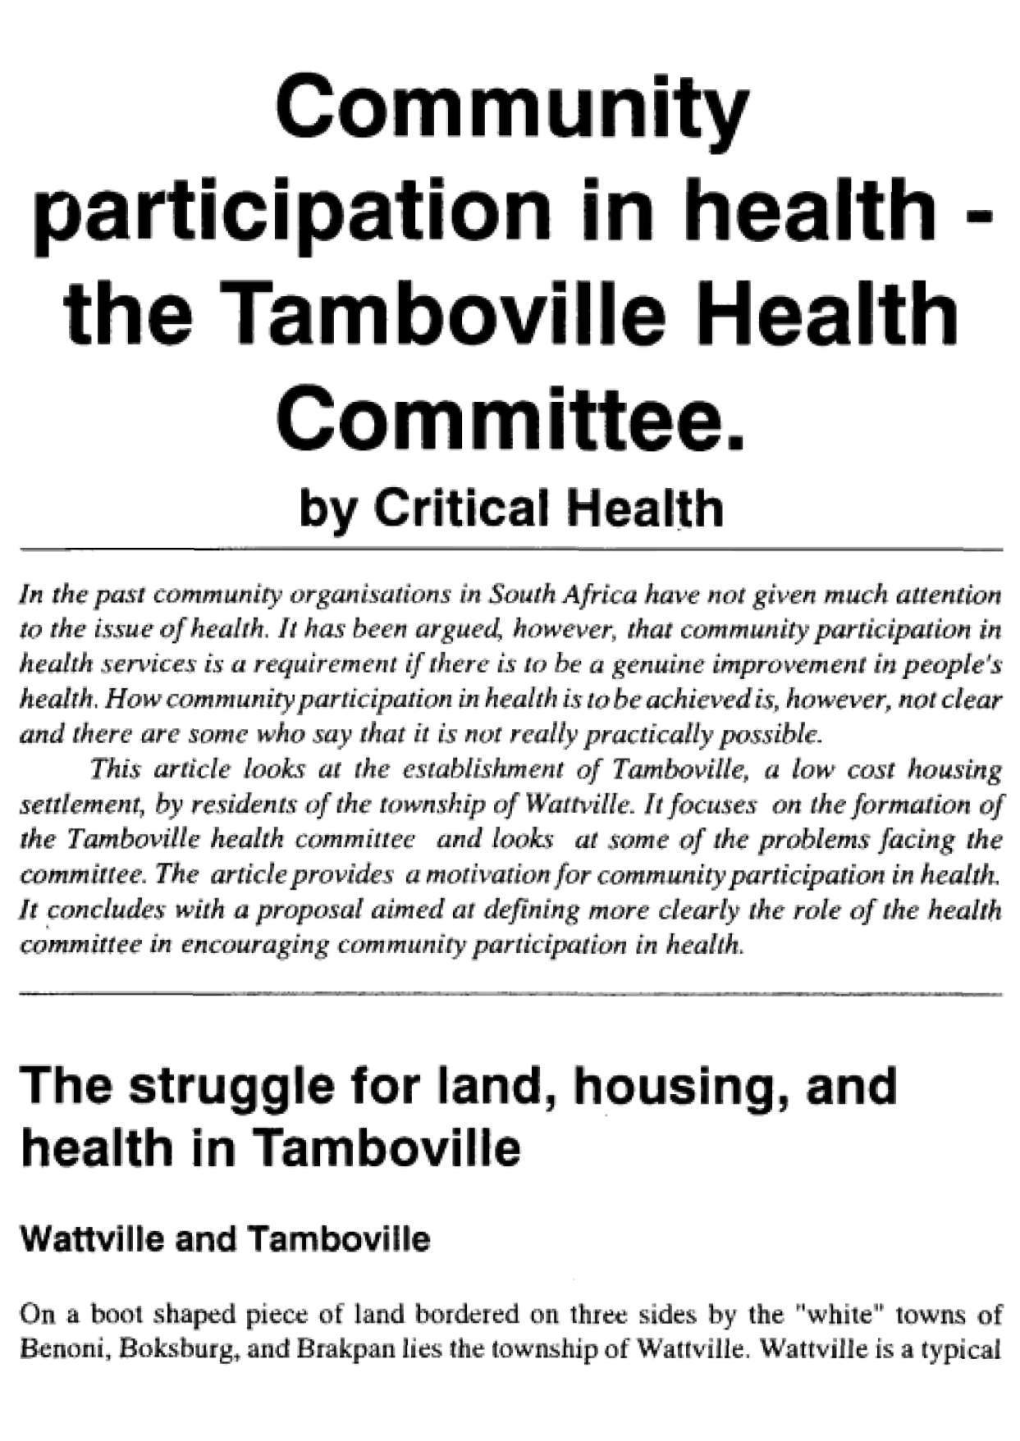 Tamboville and Wattville